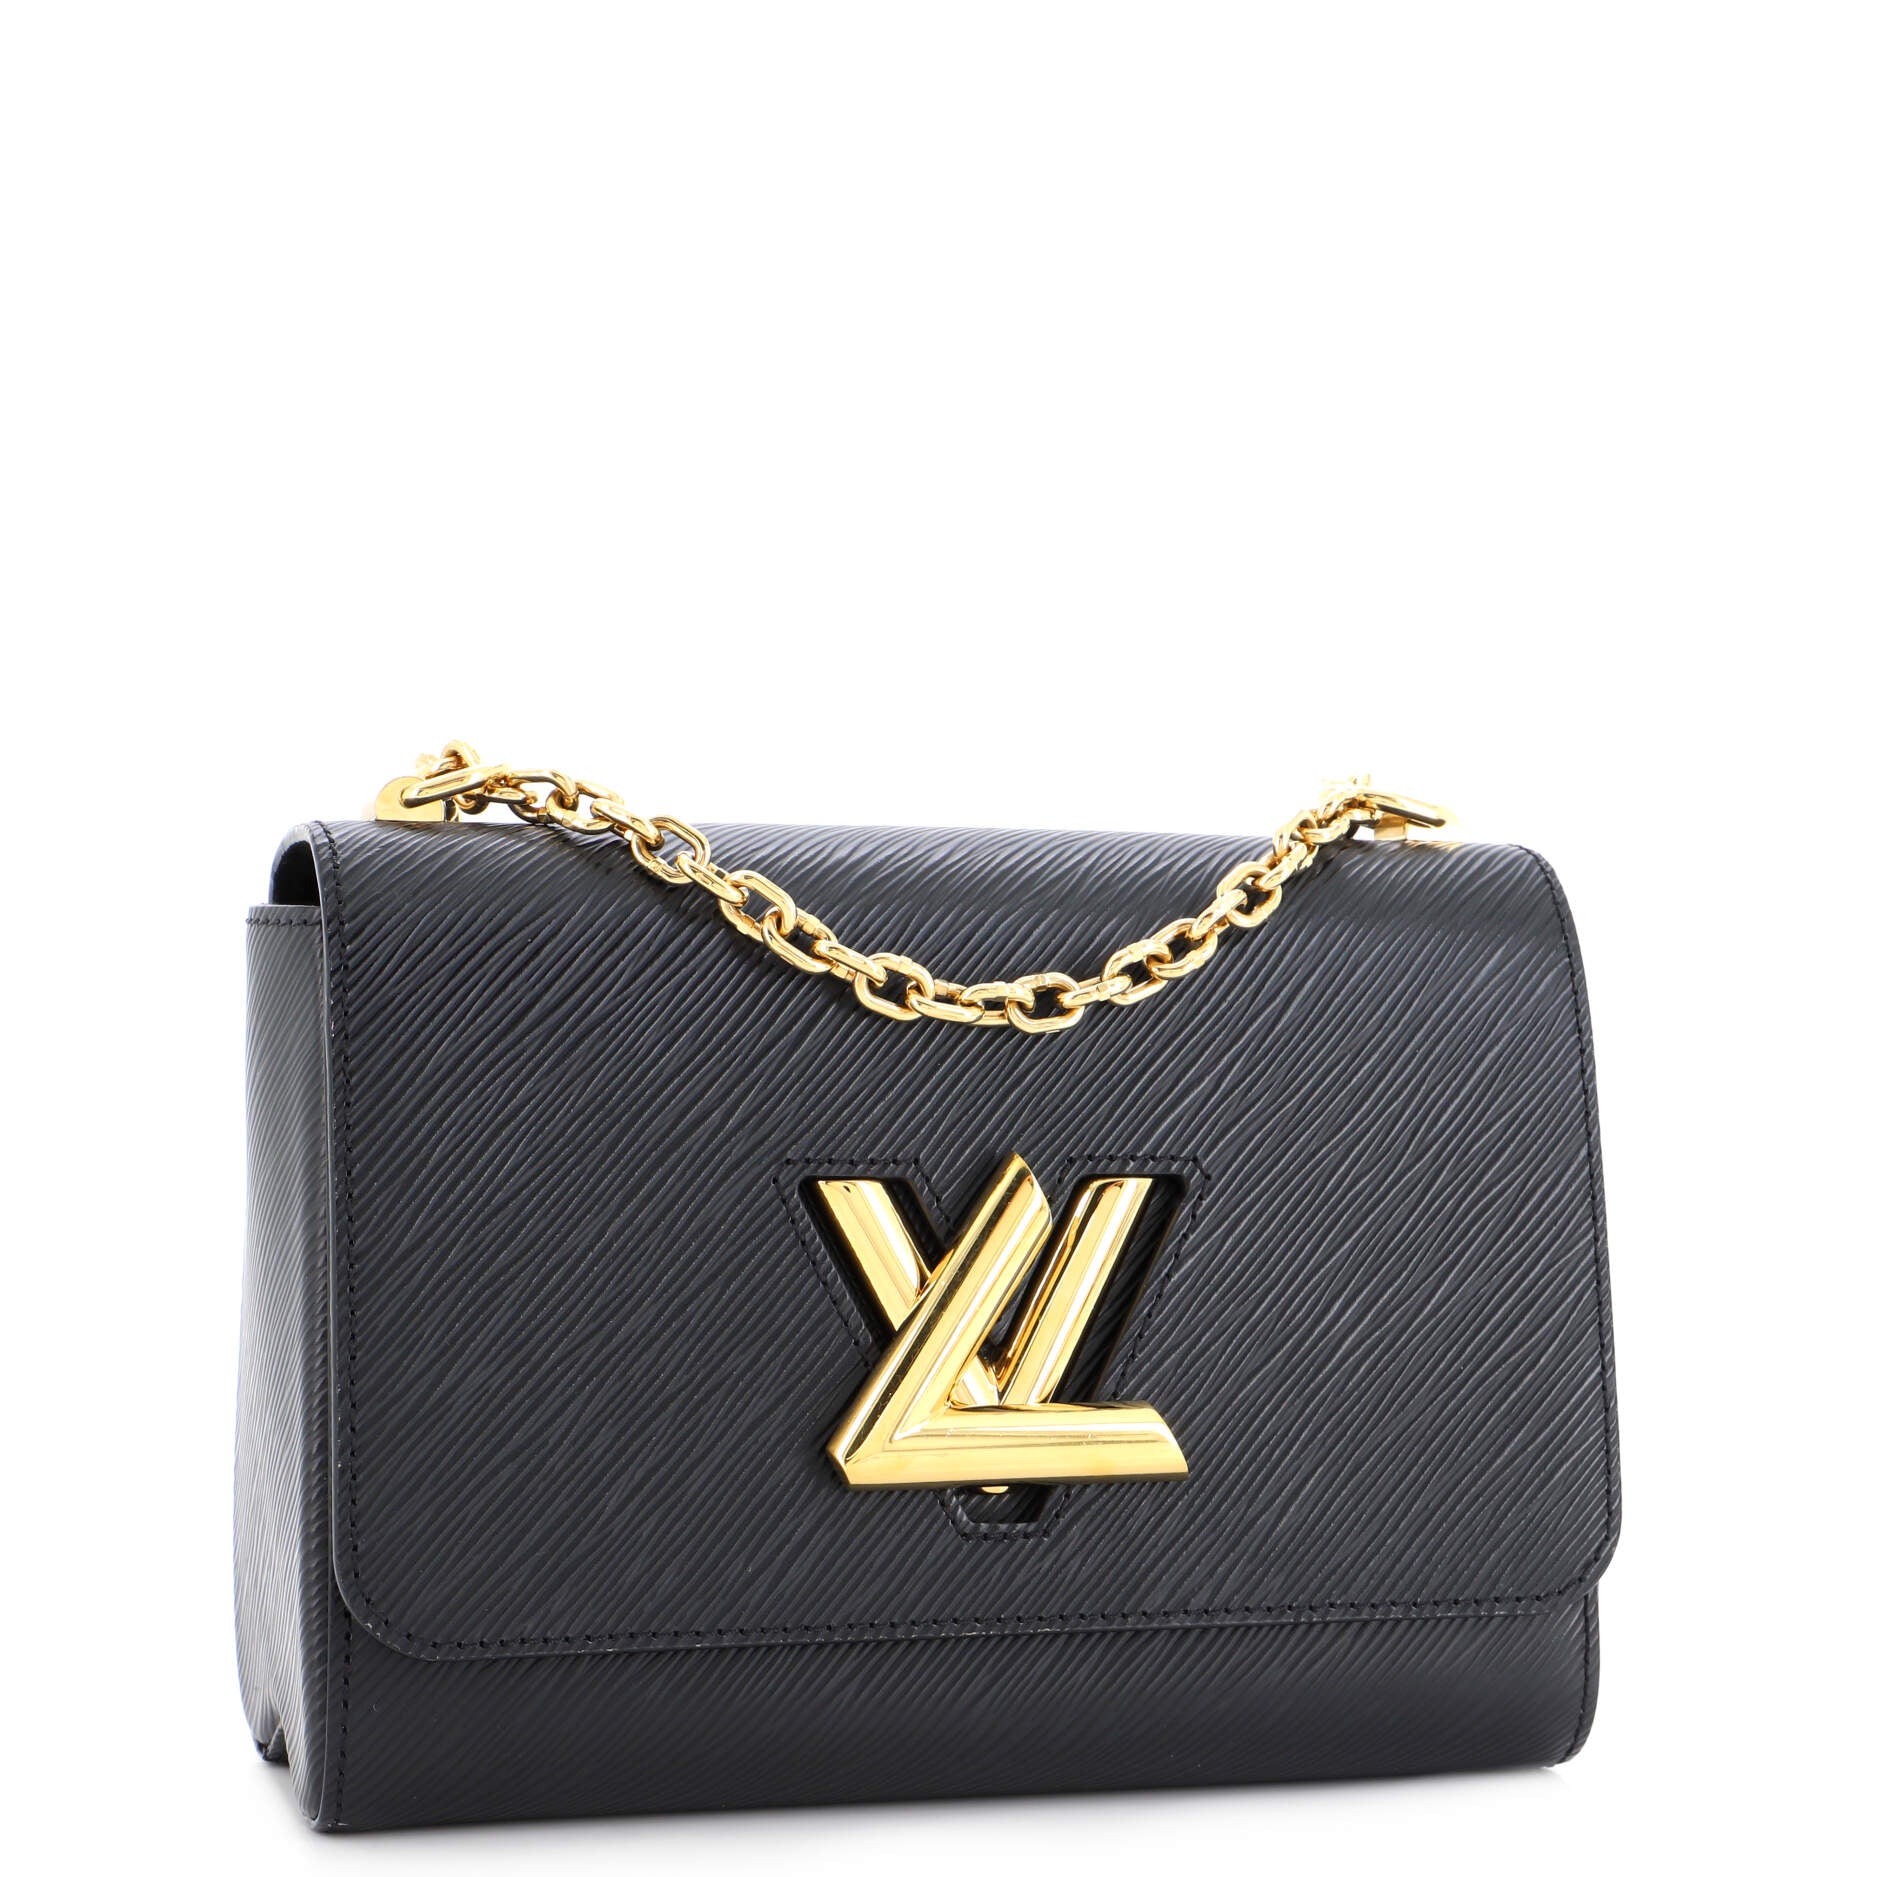 Pre-Owned Louis Vuitton Reporter Bag 211470/104 | Rebag